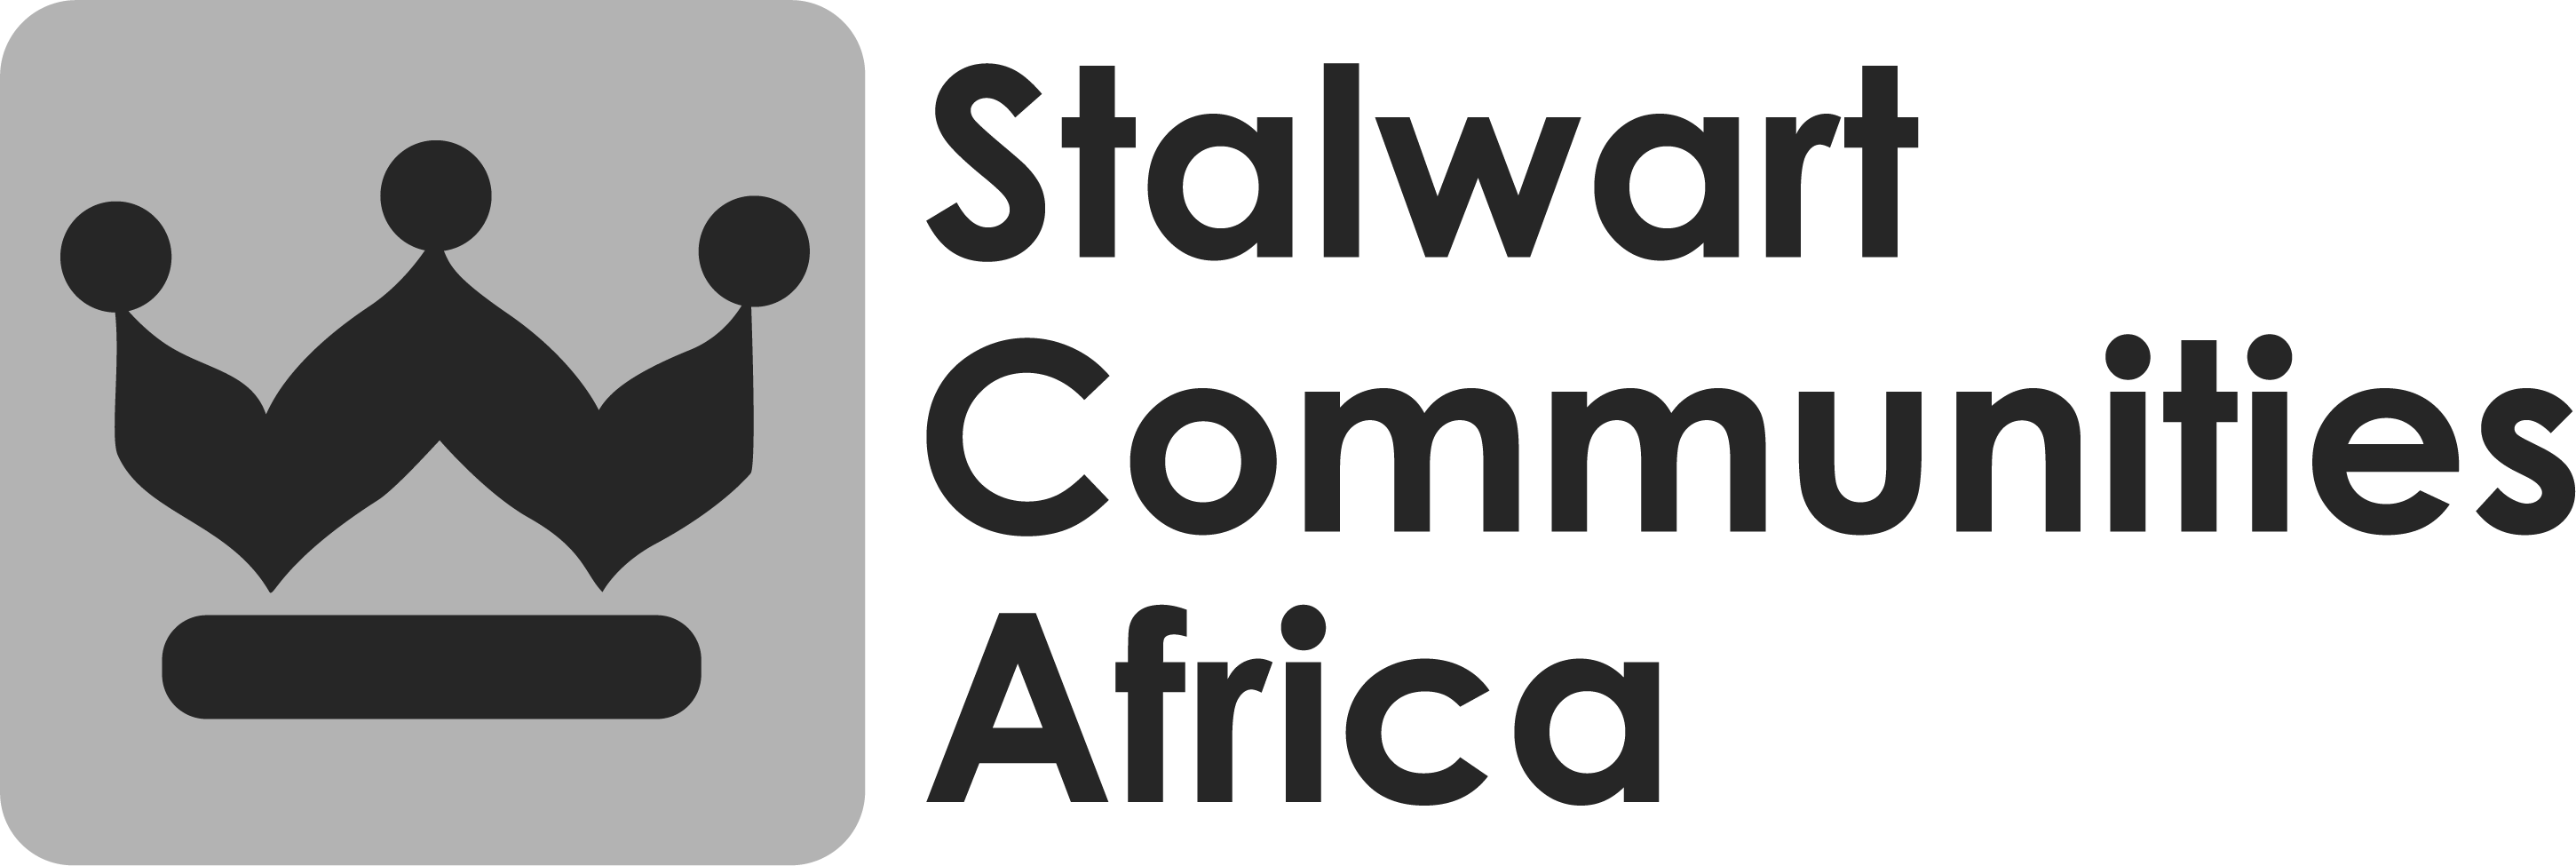 Stalwart Communities Africa logo